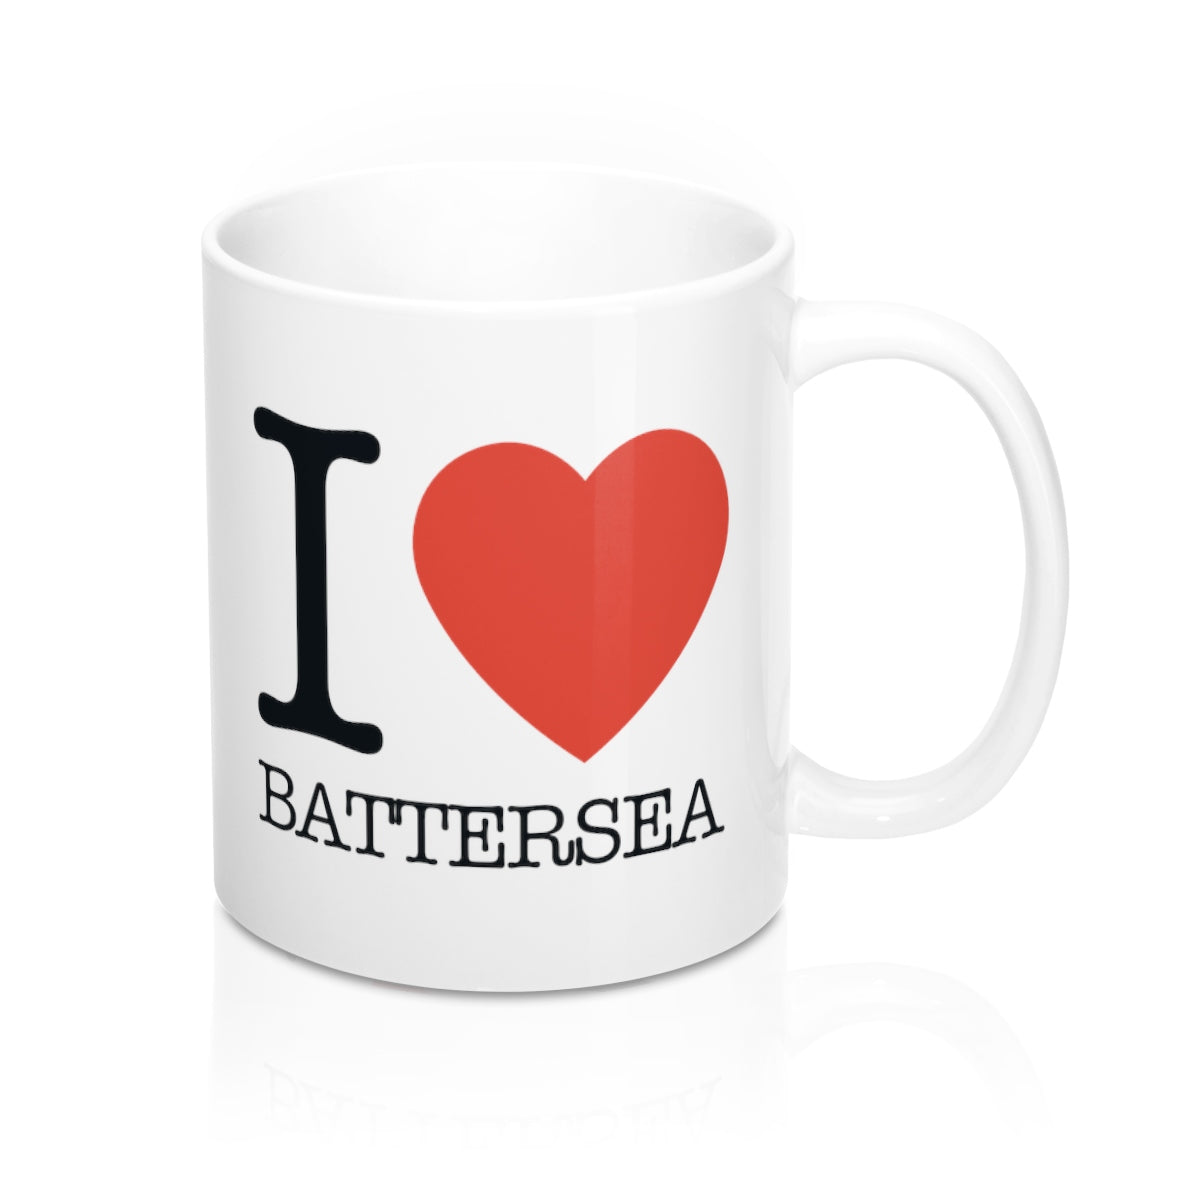 I Heart Batterea Mug